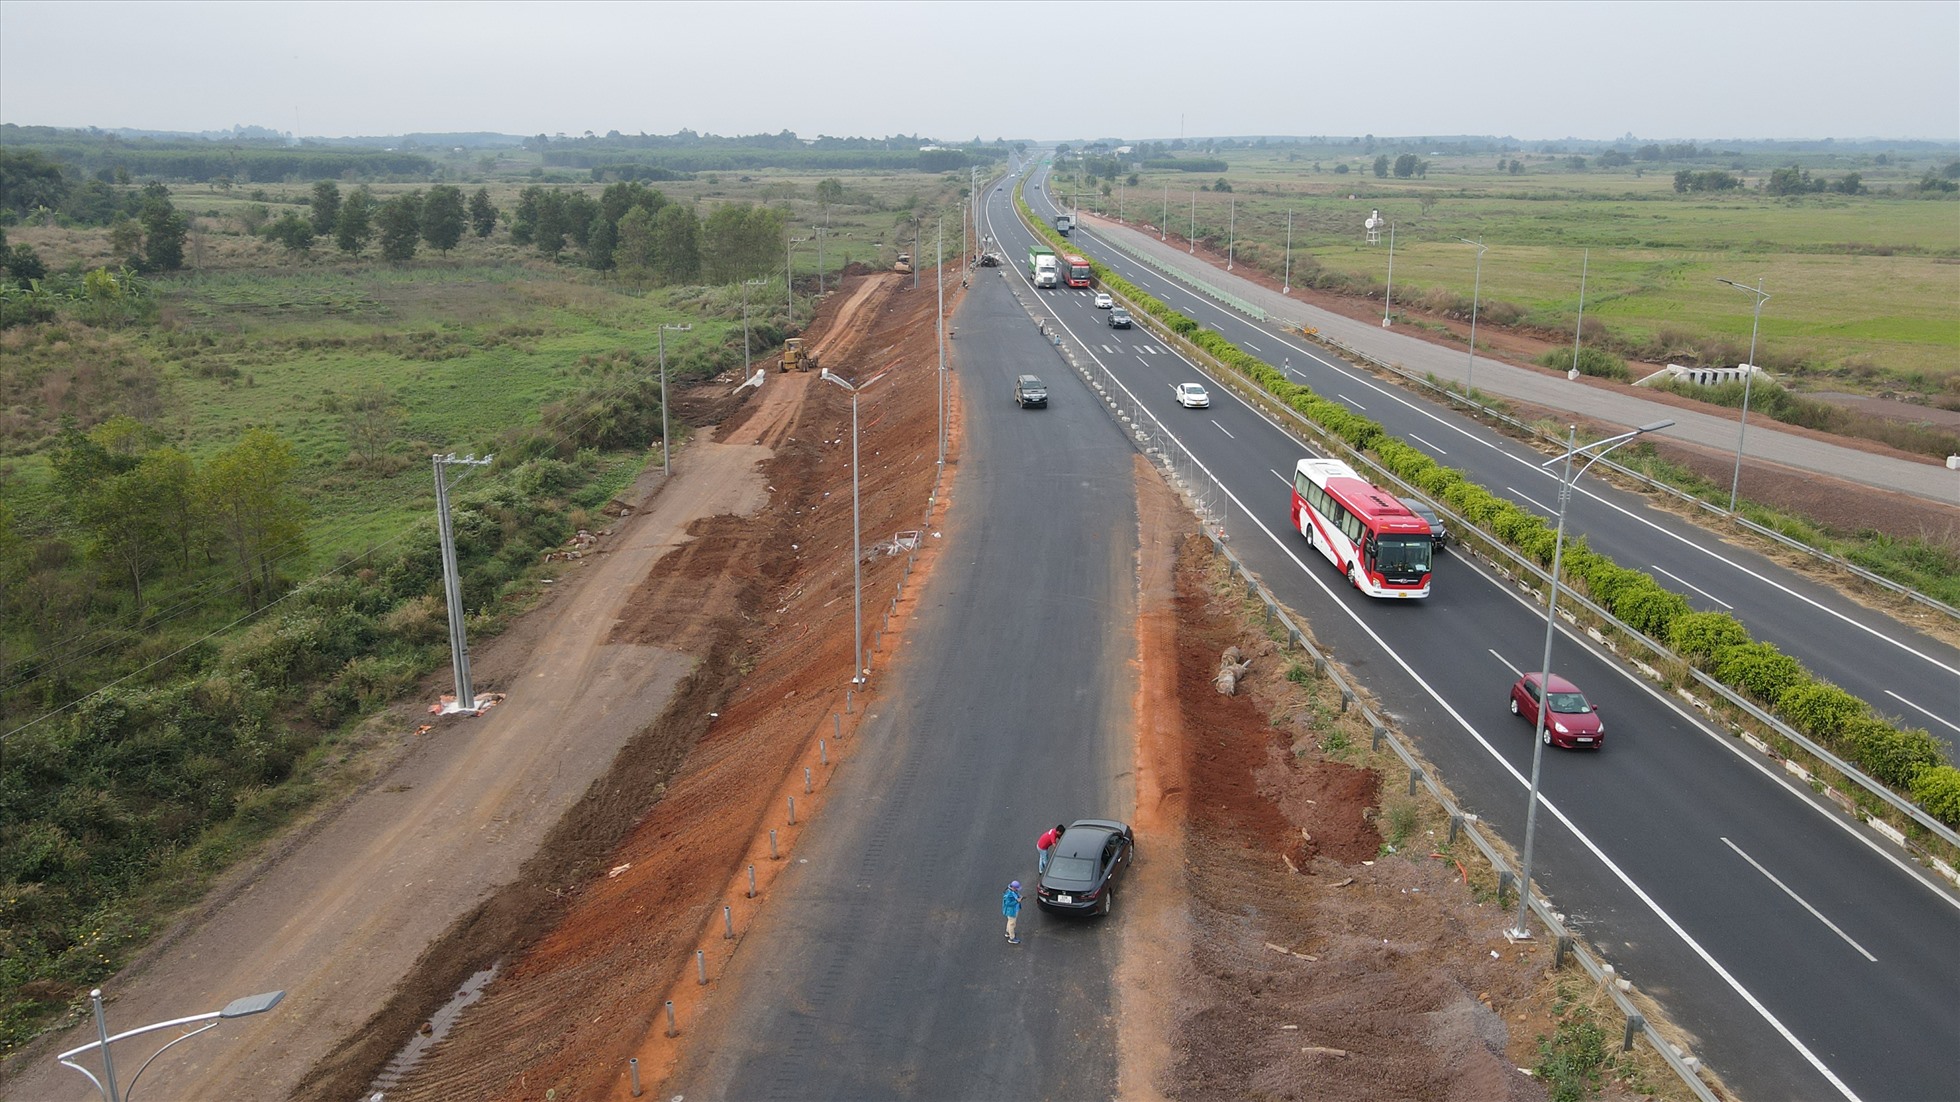 Hạng mục nút giao giữa đường cao tốc Phan Thiết - Dầu Giây với đường cao tốc TP.HCM - Long Thành - Dầu Giây đang được tập trung đẩy nhanh tiến độ thi công.